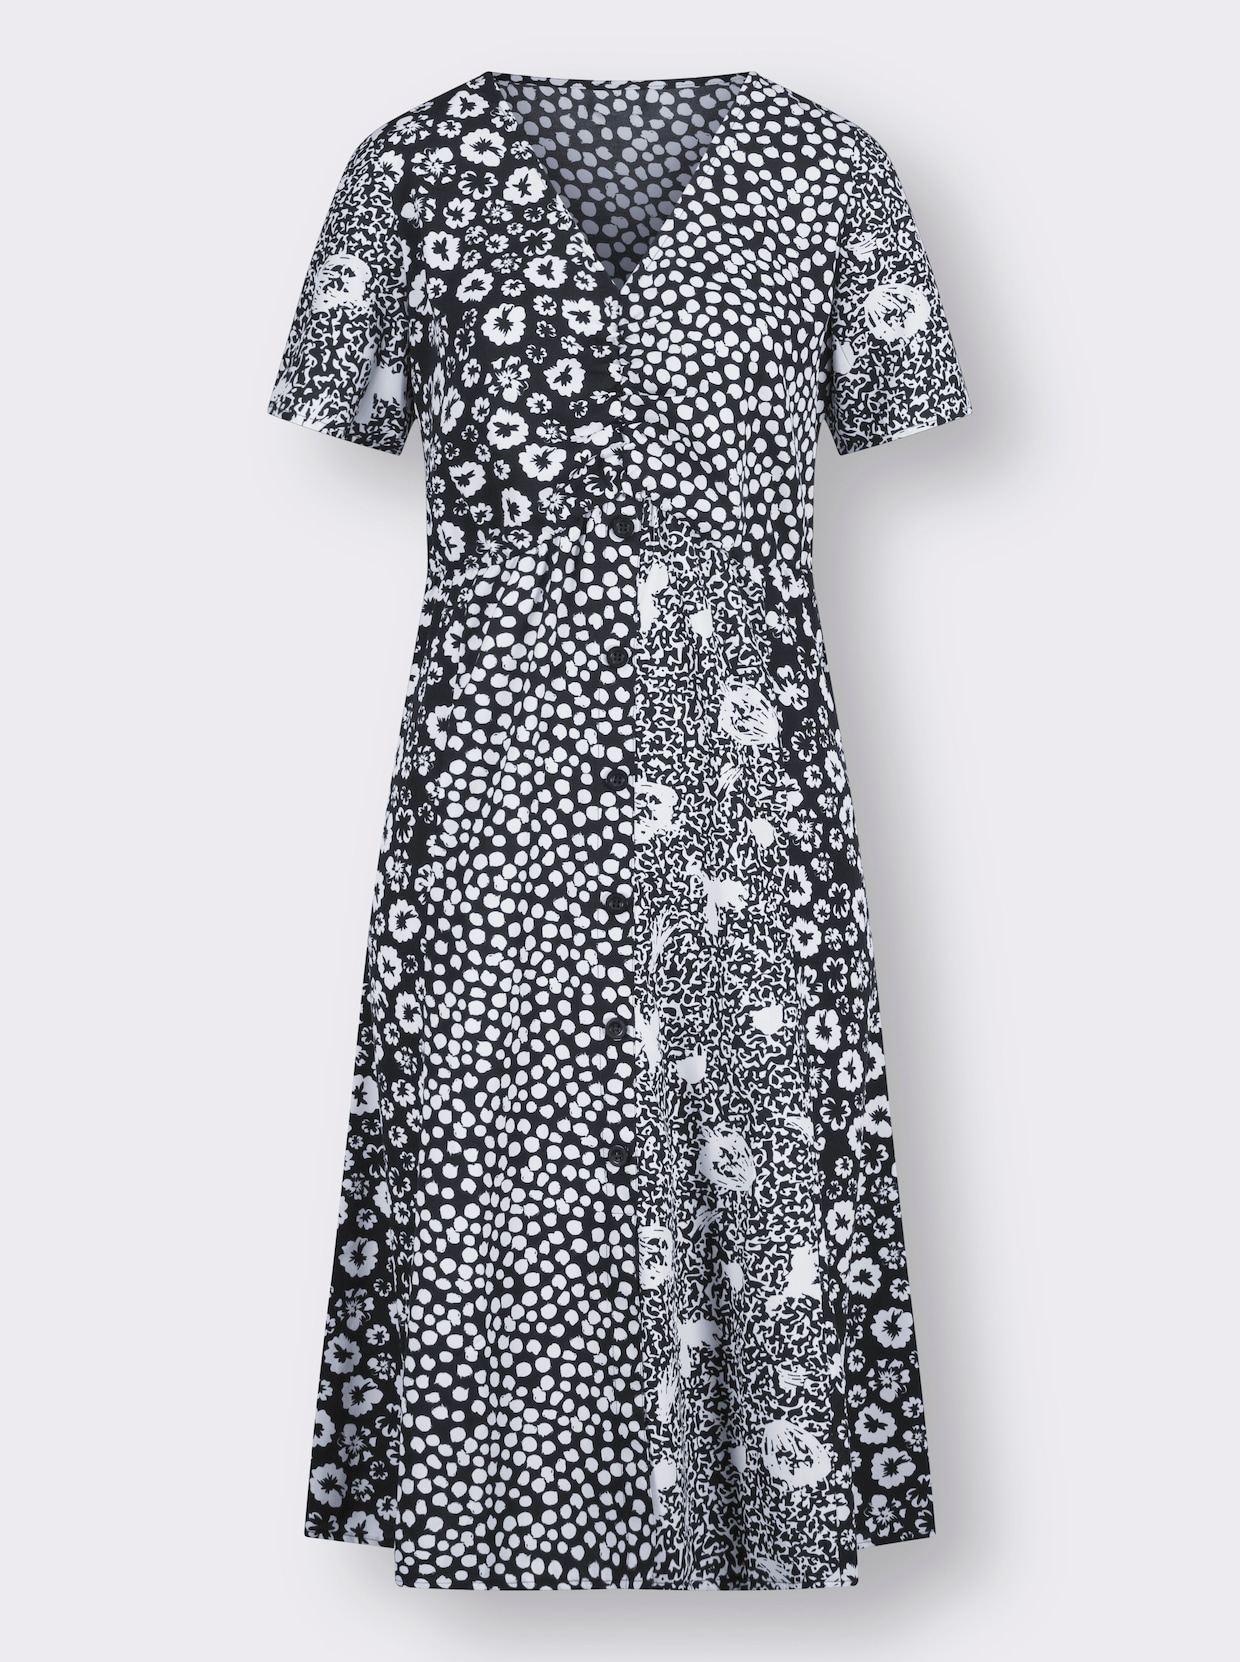 Bedrukte jurk - zwart/wit gedessineerd